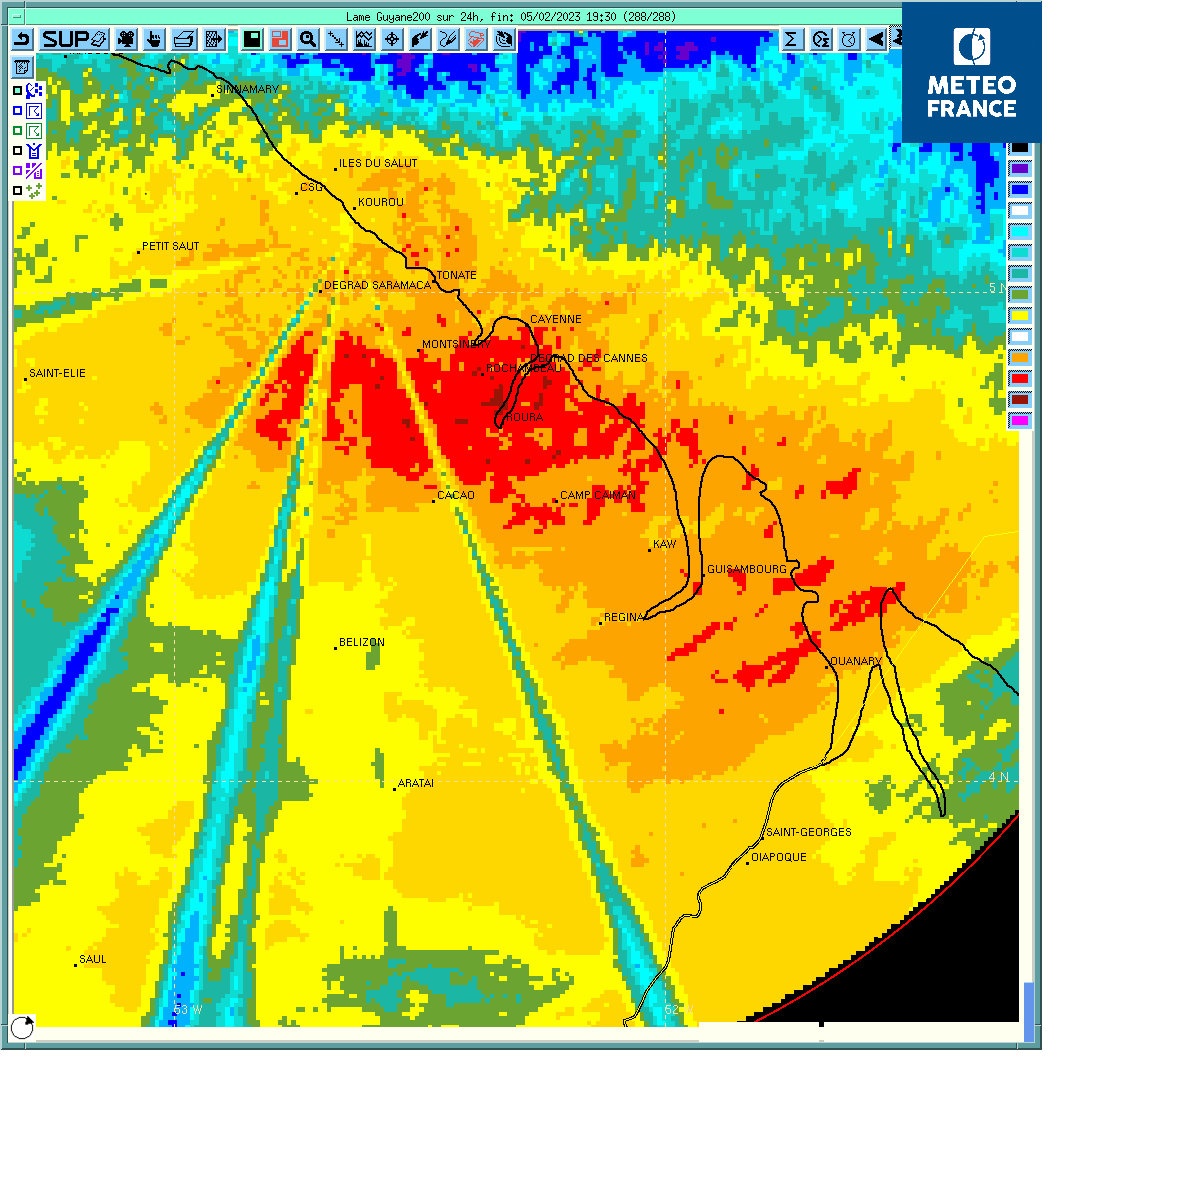 Cumuls pluvieux sur  24 heures à partir des images radar entre samedi à 16h30 et dfimanche  à  16h3030